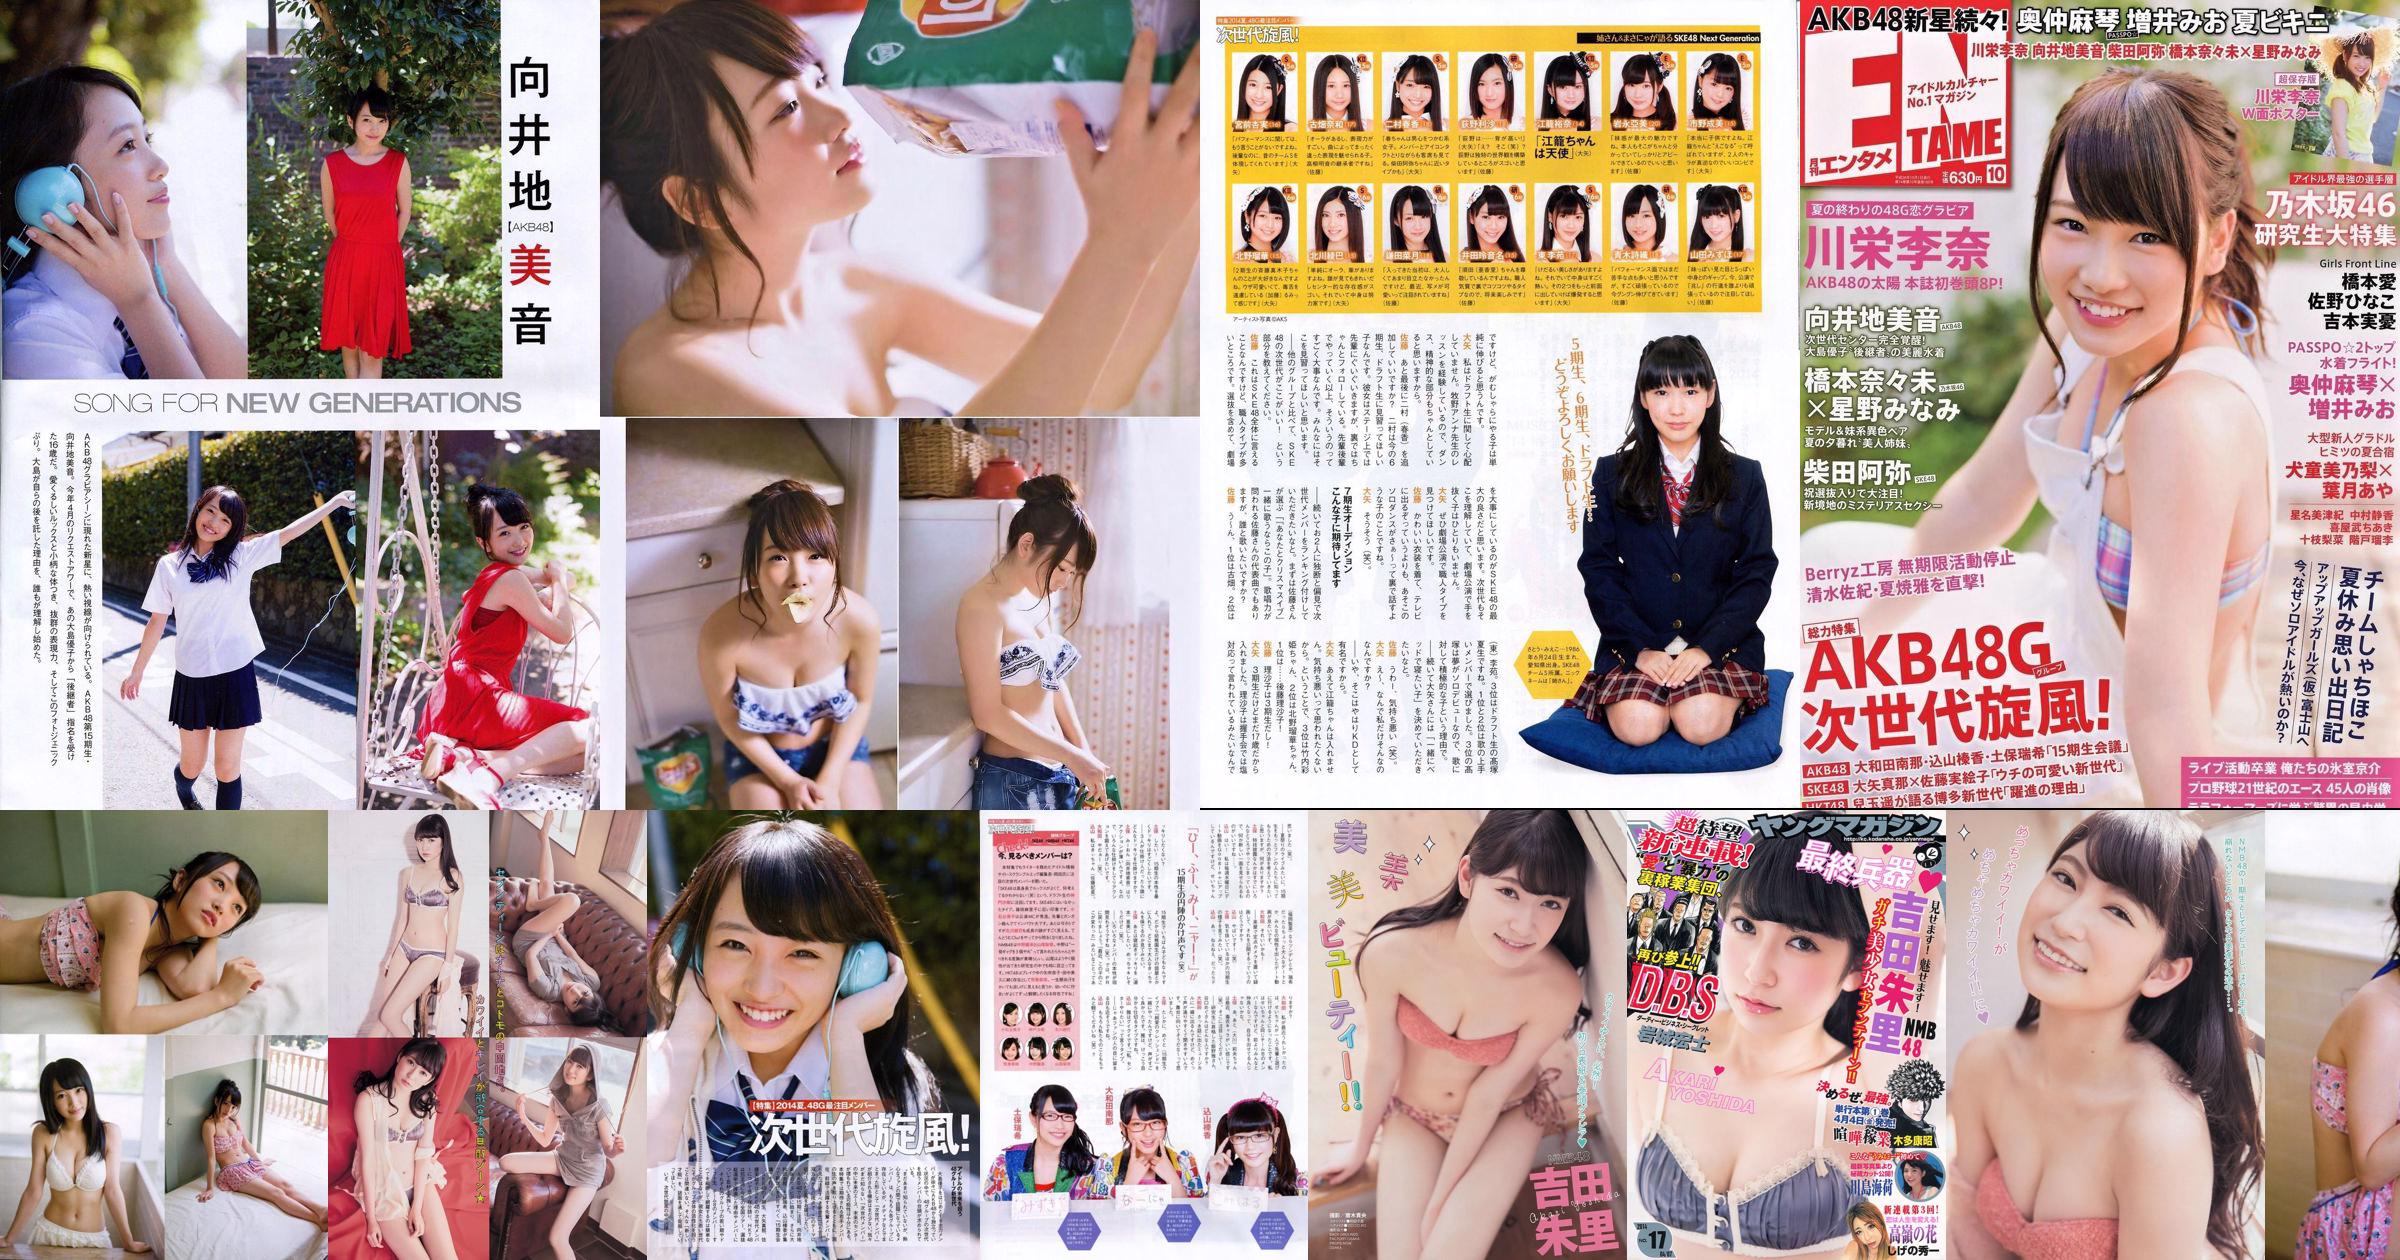 [Young Magazine] Akari Yoshida Umika Kawashima 2014 Nr. 17 Foto No.2b68cb Seite 5